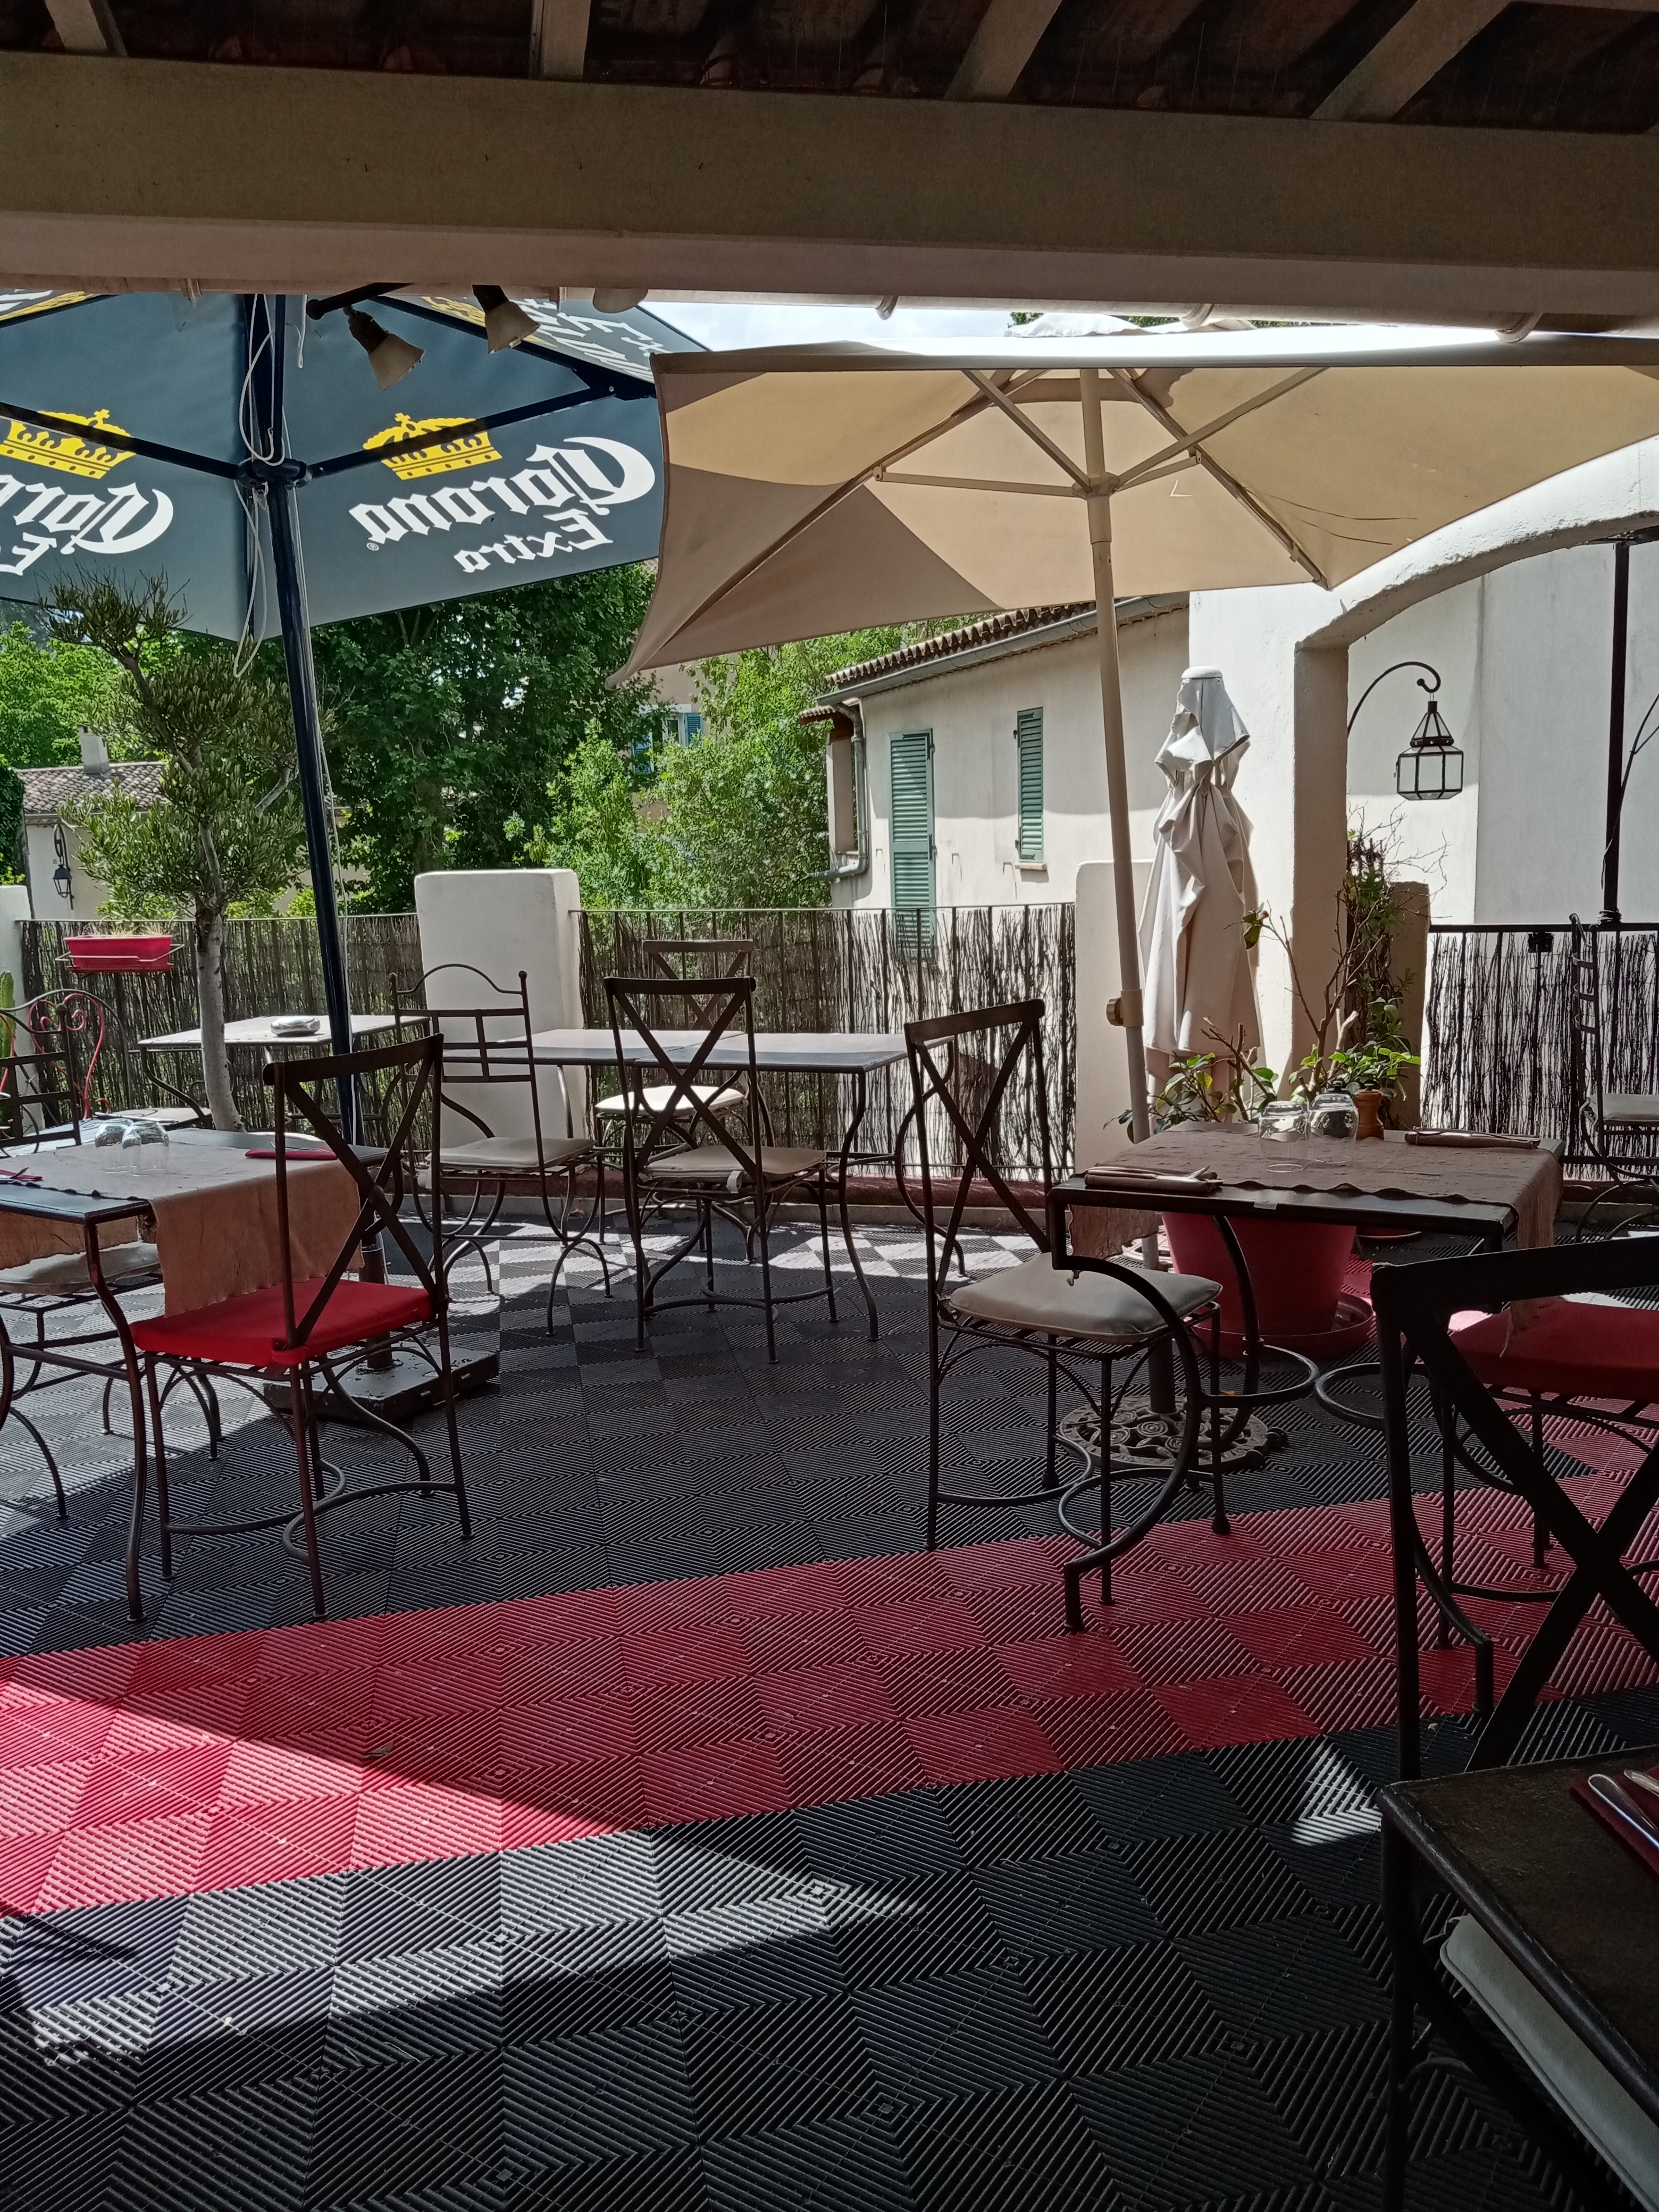 vend restaurant traditionnel cuisine et toilette aux normes loyer 900 euro dans village provençal du var terrasse 40 places intérieur 30